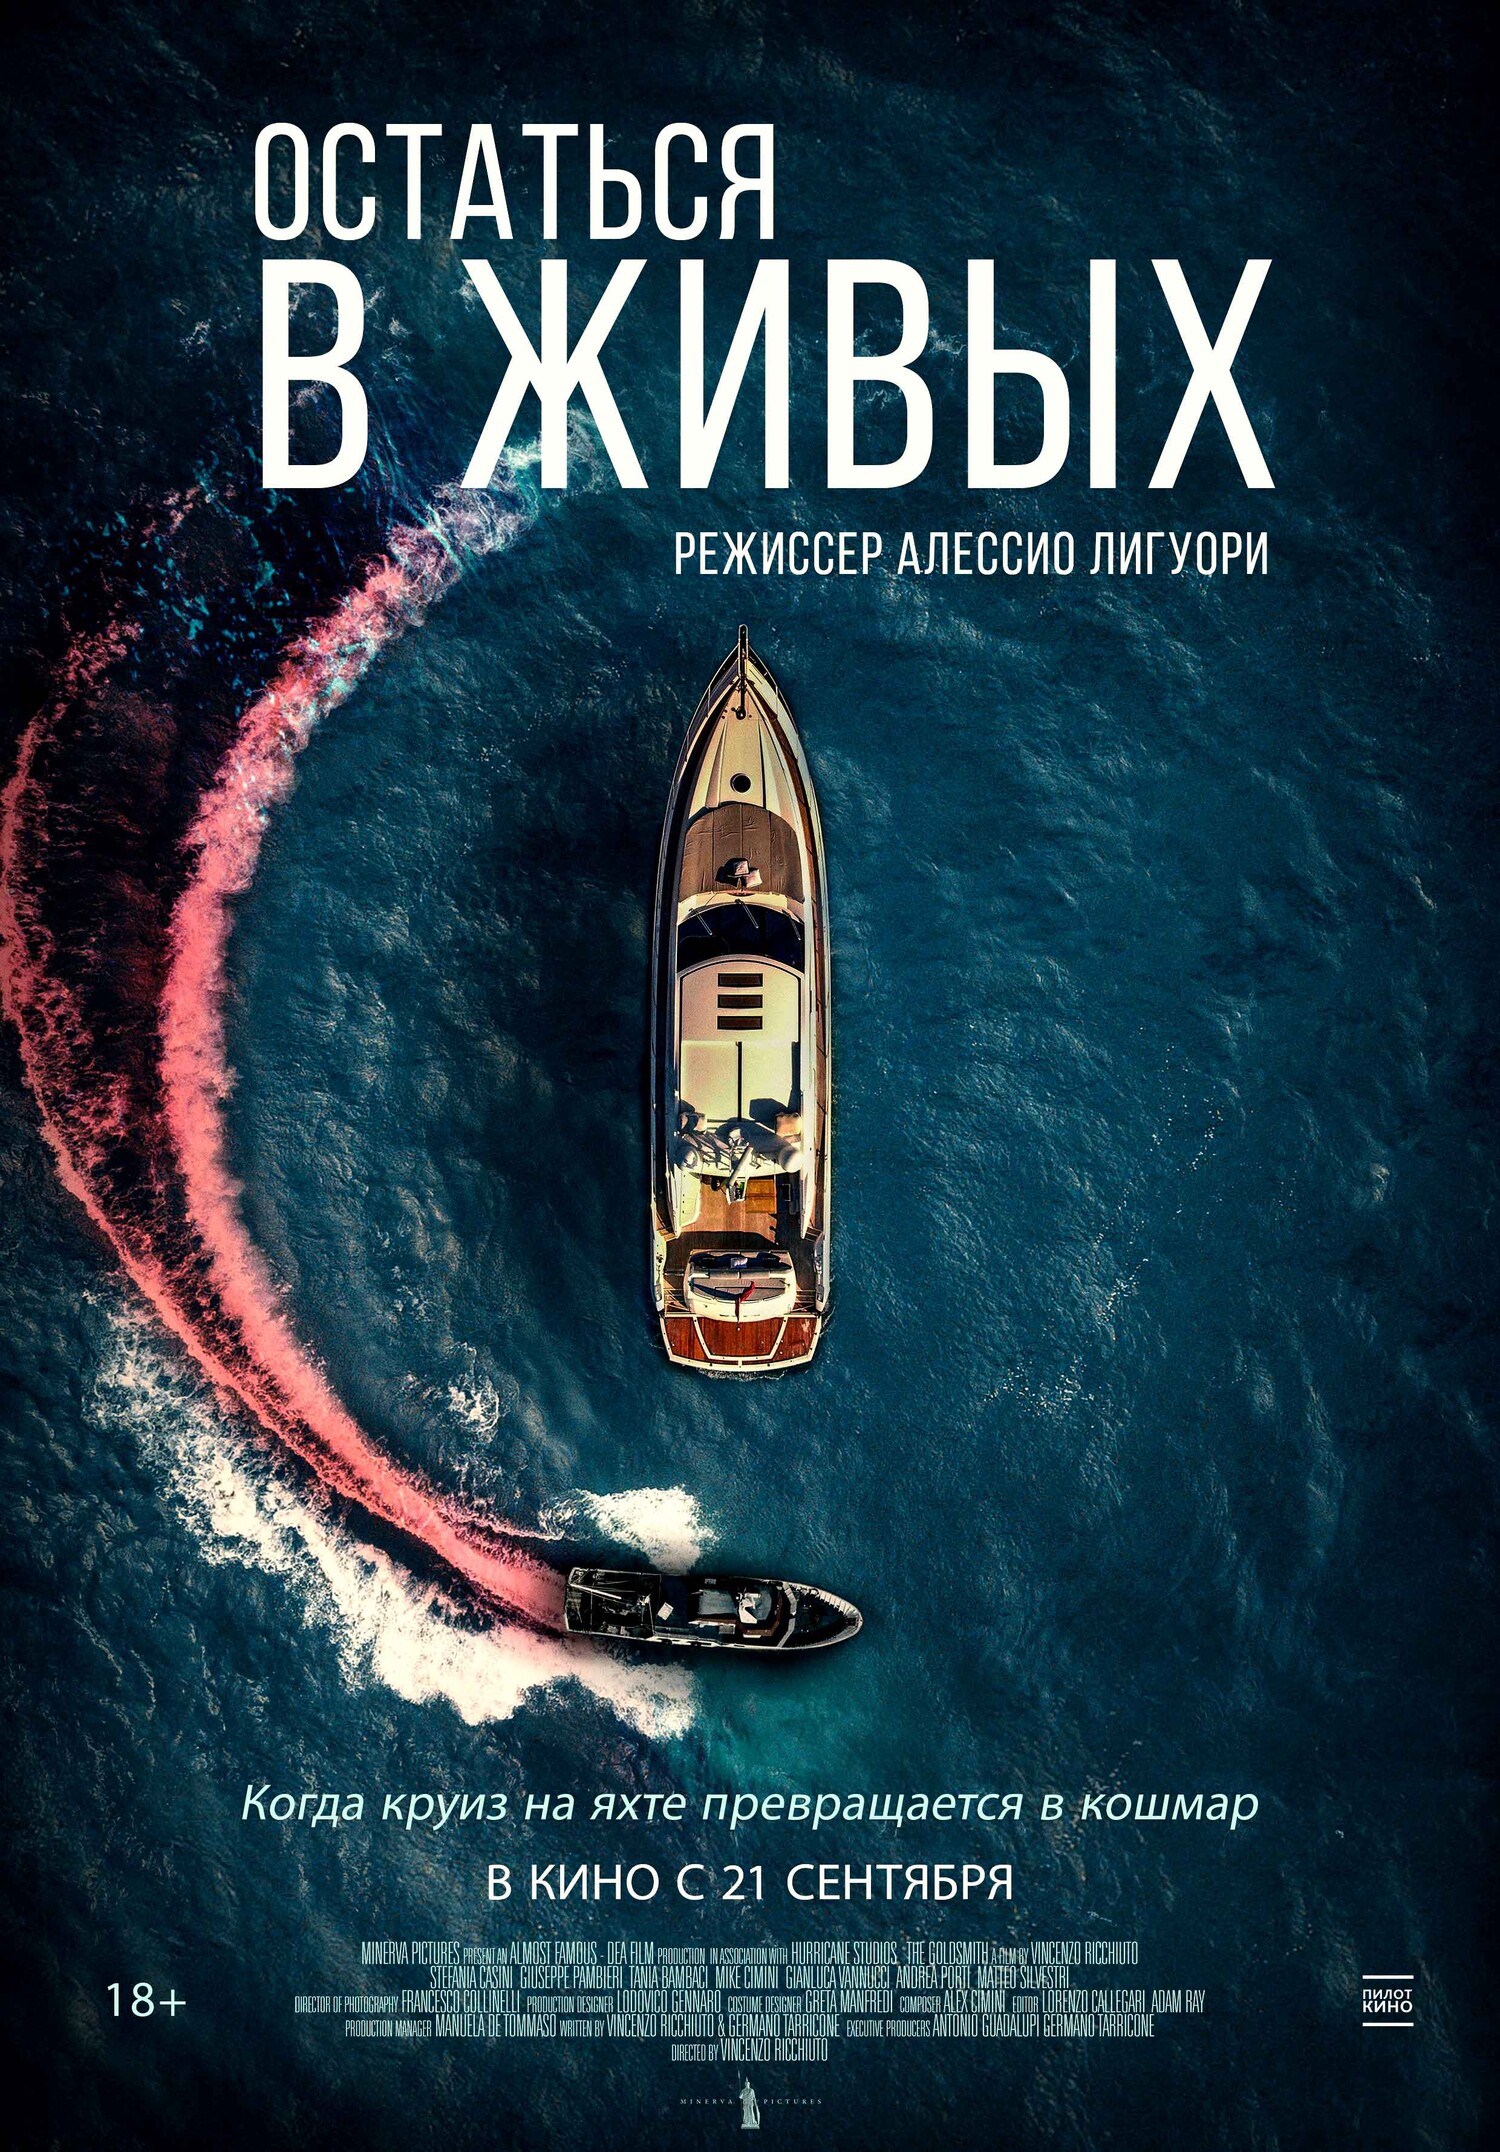 Море яхта: смотреть русское порно видео бесплатно